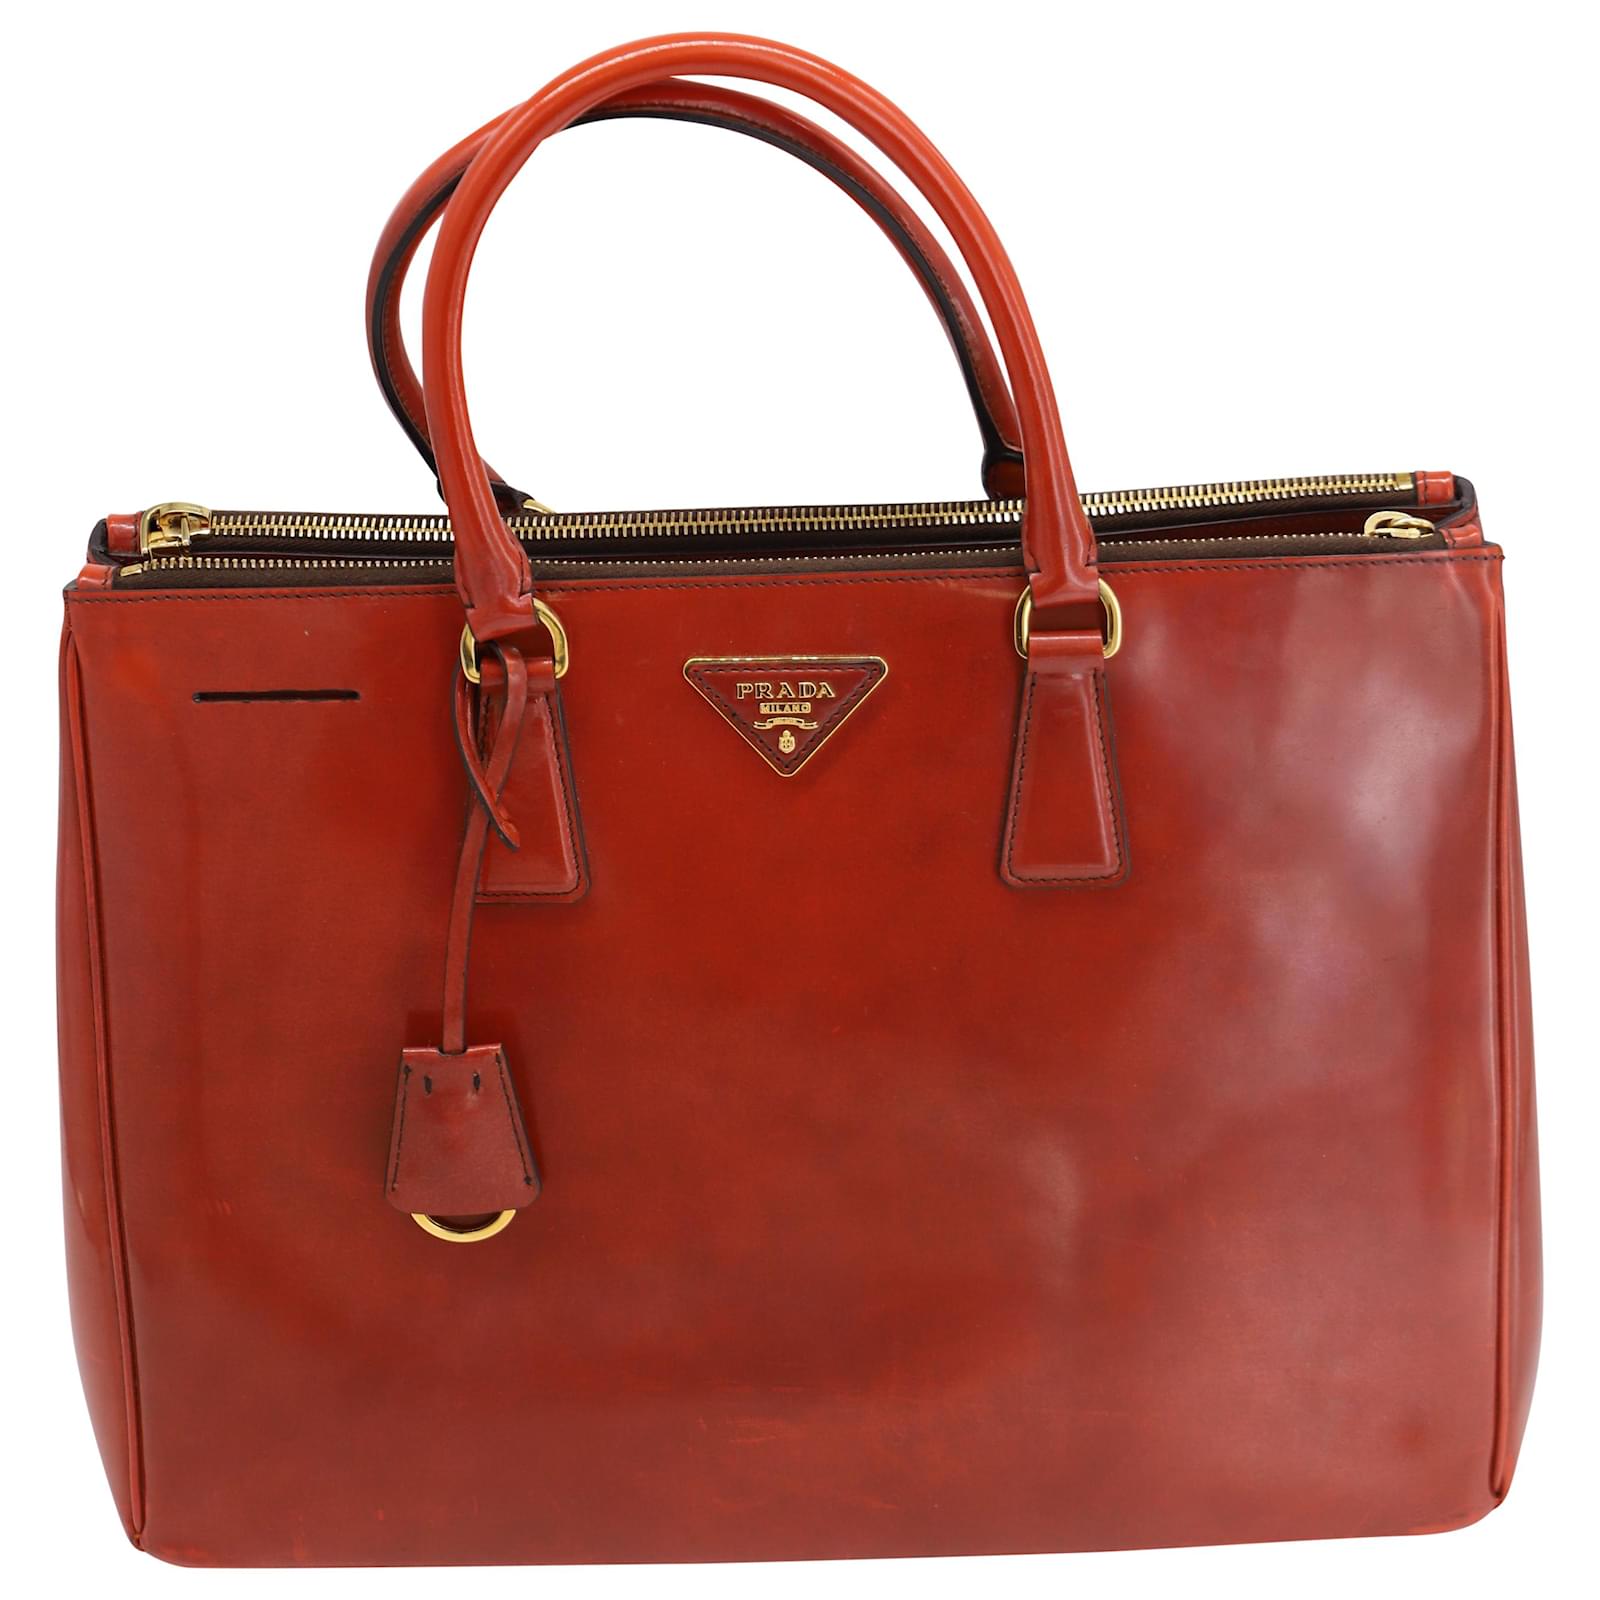 Prada Large Galleria Leather Bag